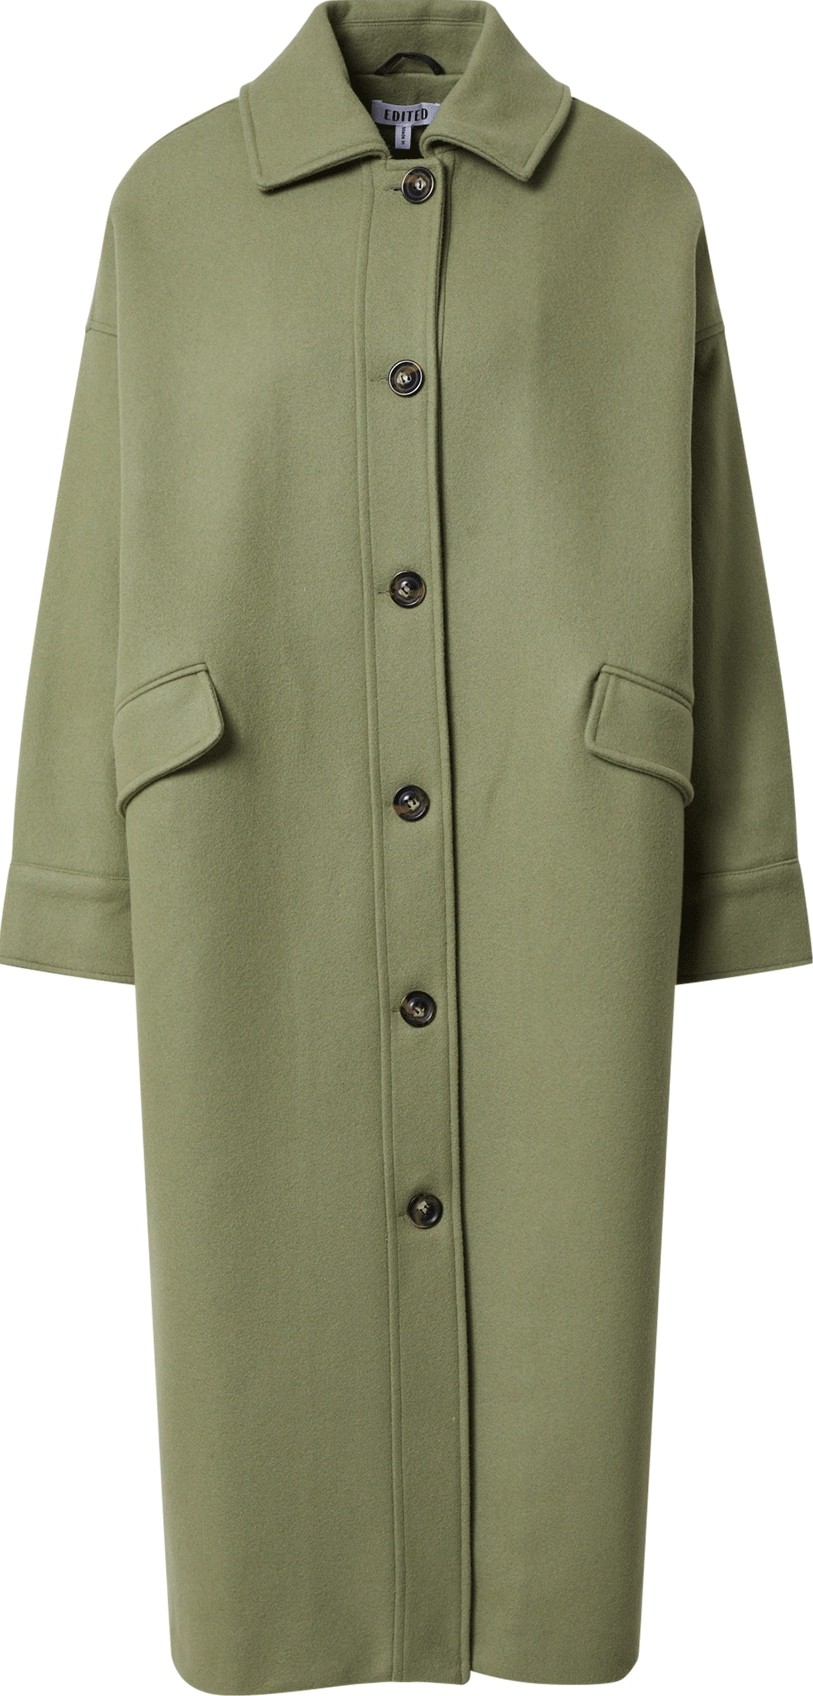 Přechodný kabát 'Marianna' EDITED pastelově zelená